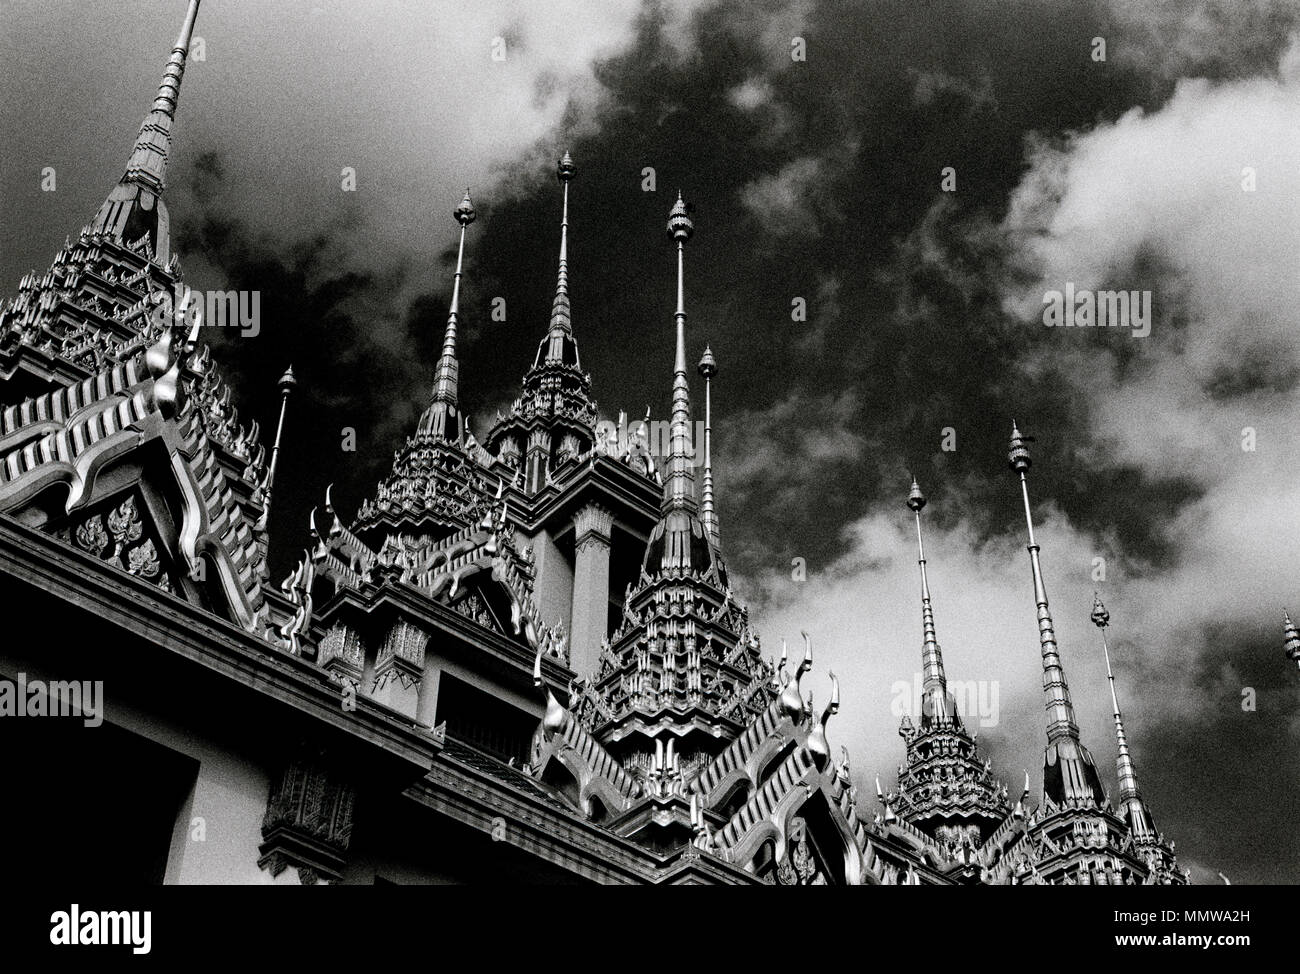 Ciel dramatique et les clochers de la Buddhist Temple Loha Prasat Metal Château de Wat Ratchanadda à Bangkok en Thaïlande en Asie du Sud-Est Extrême-Orient. Billet d Banque D'Images